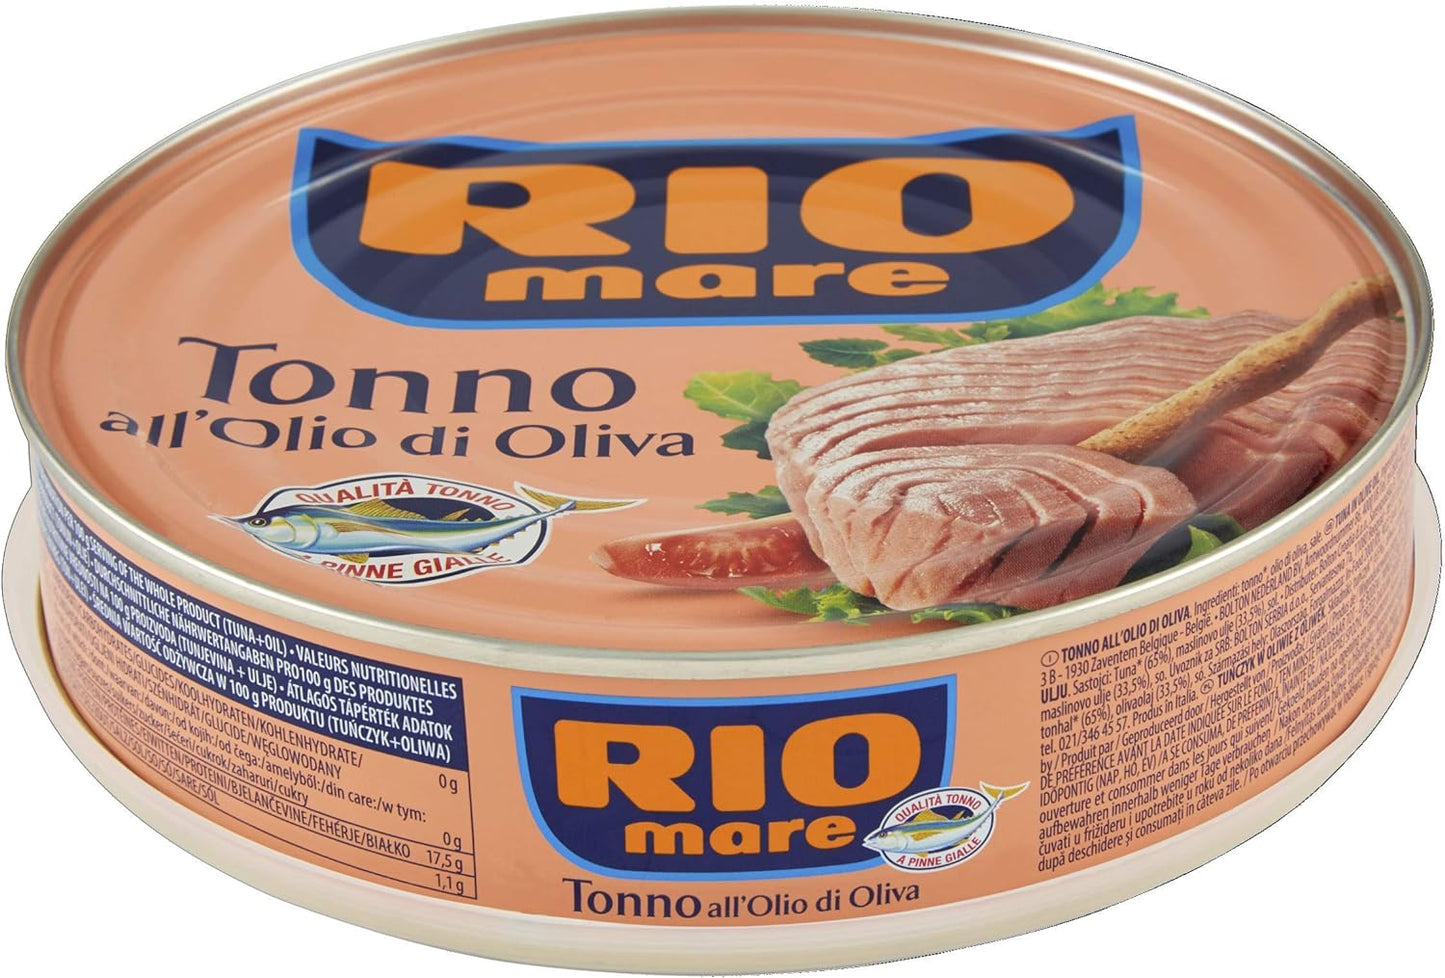 Rio Mare - Tonno all'Olio di Oliva, Qualità Pinne Gialle, 1 Lattina da 500 g